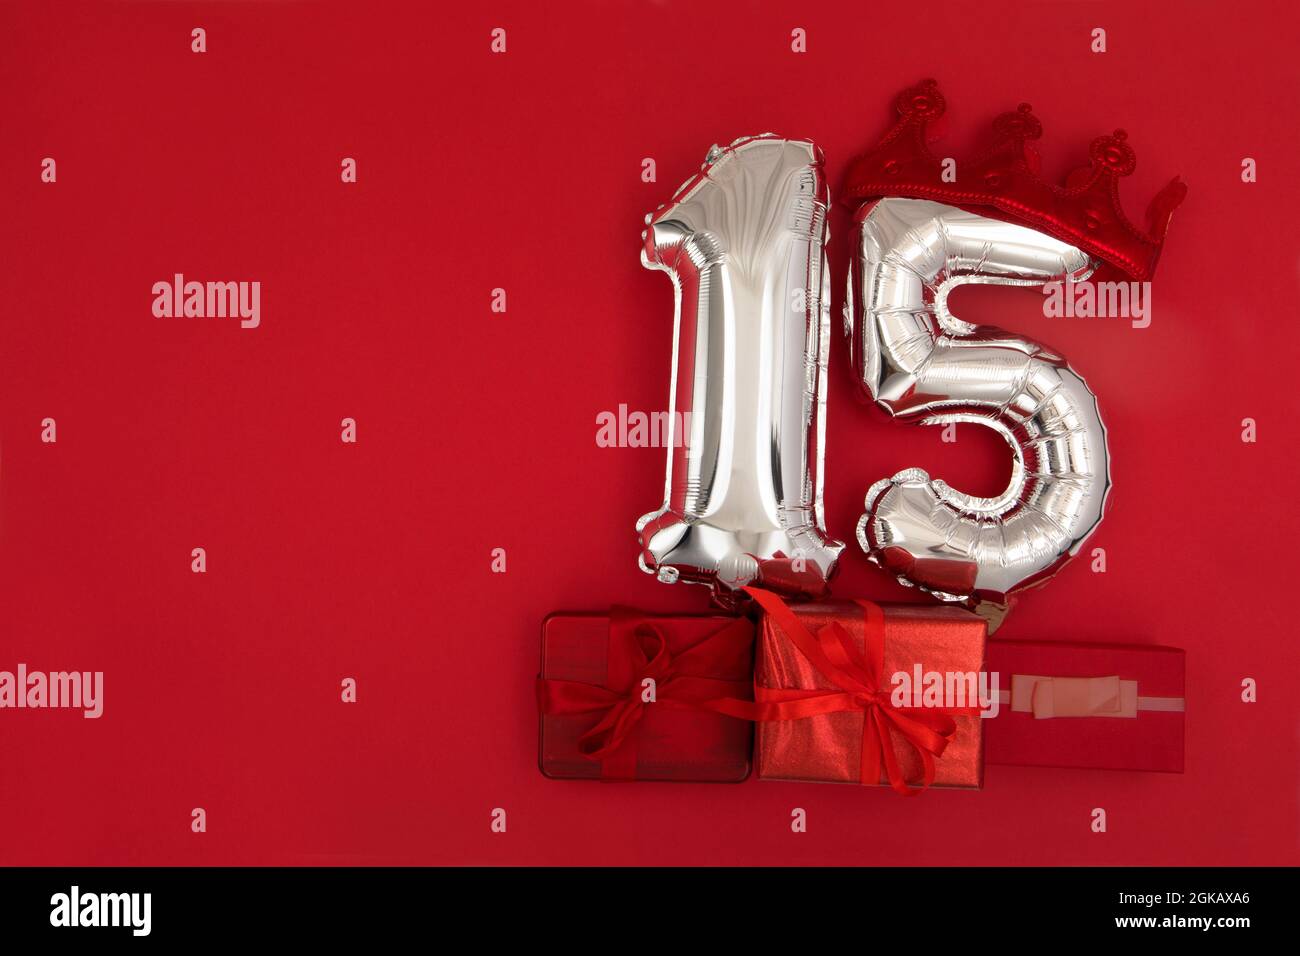 Globos de aire plateados en aluminio que muestran el número 15 quince puestos sobre fondo rojo con regalos envueltos para el concepto de aniversario de cumpleaños Foto de stock